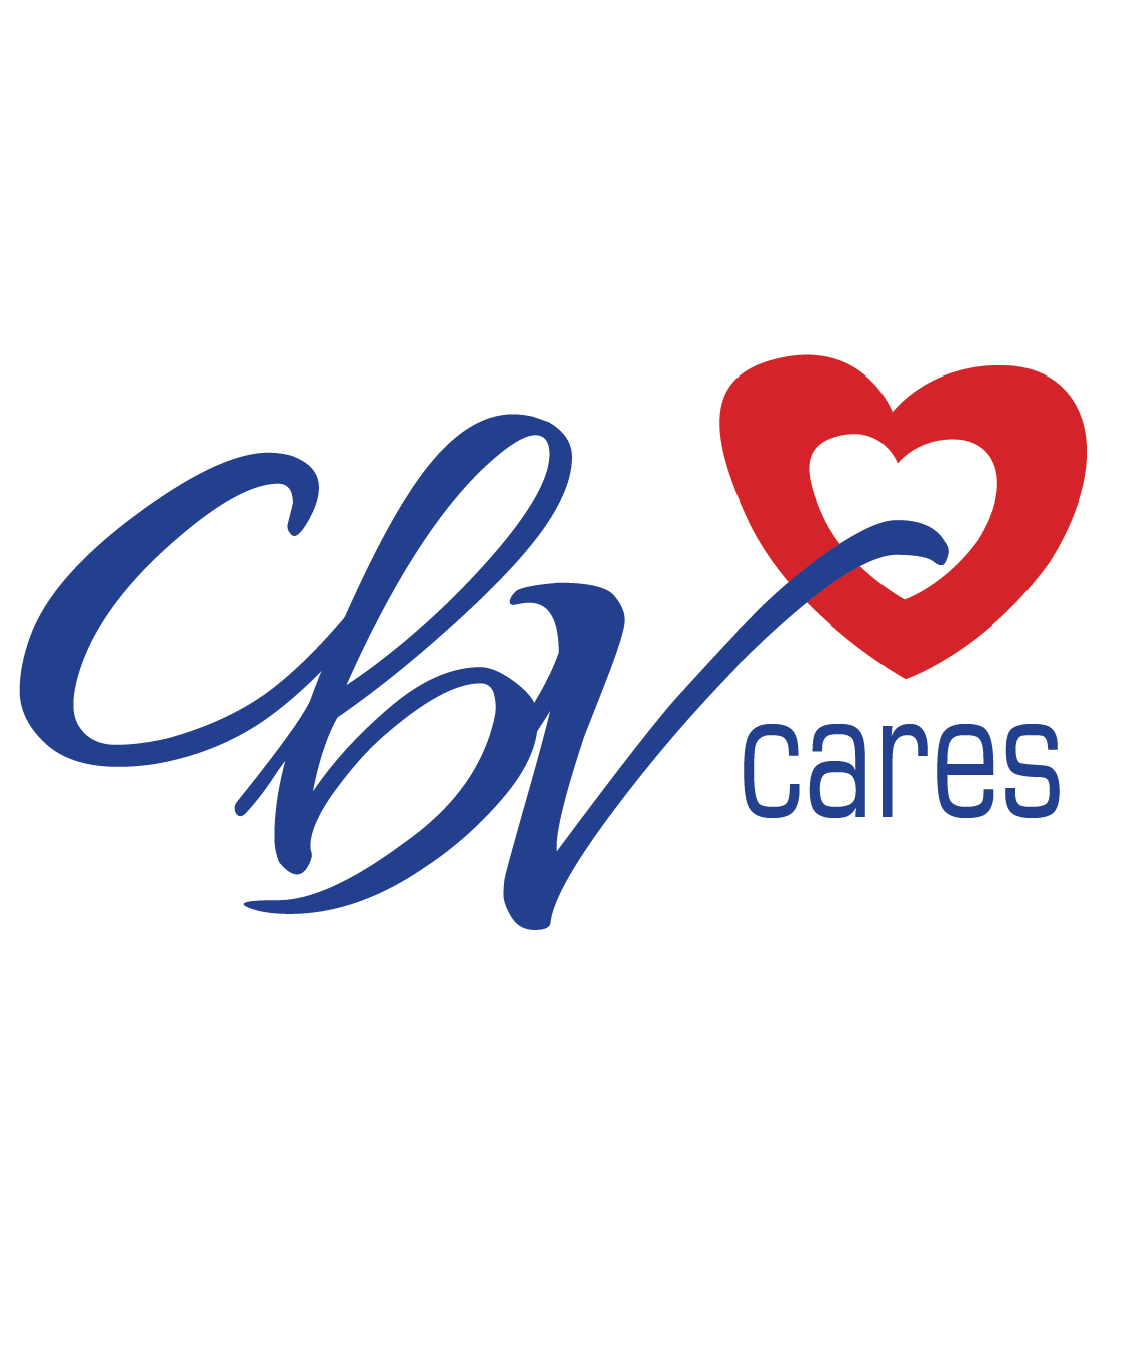 FINAL CBV cares logo